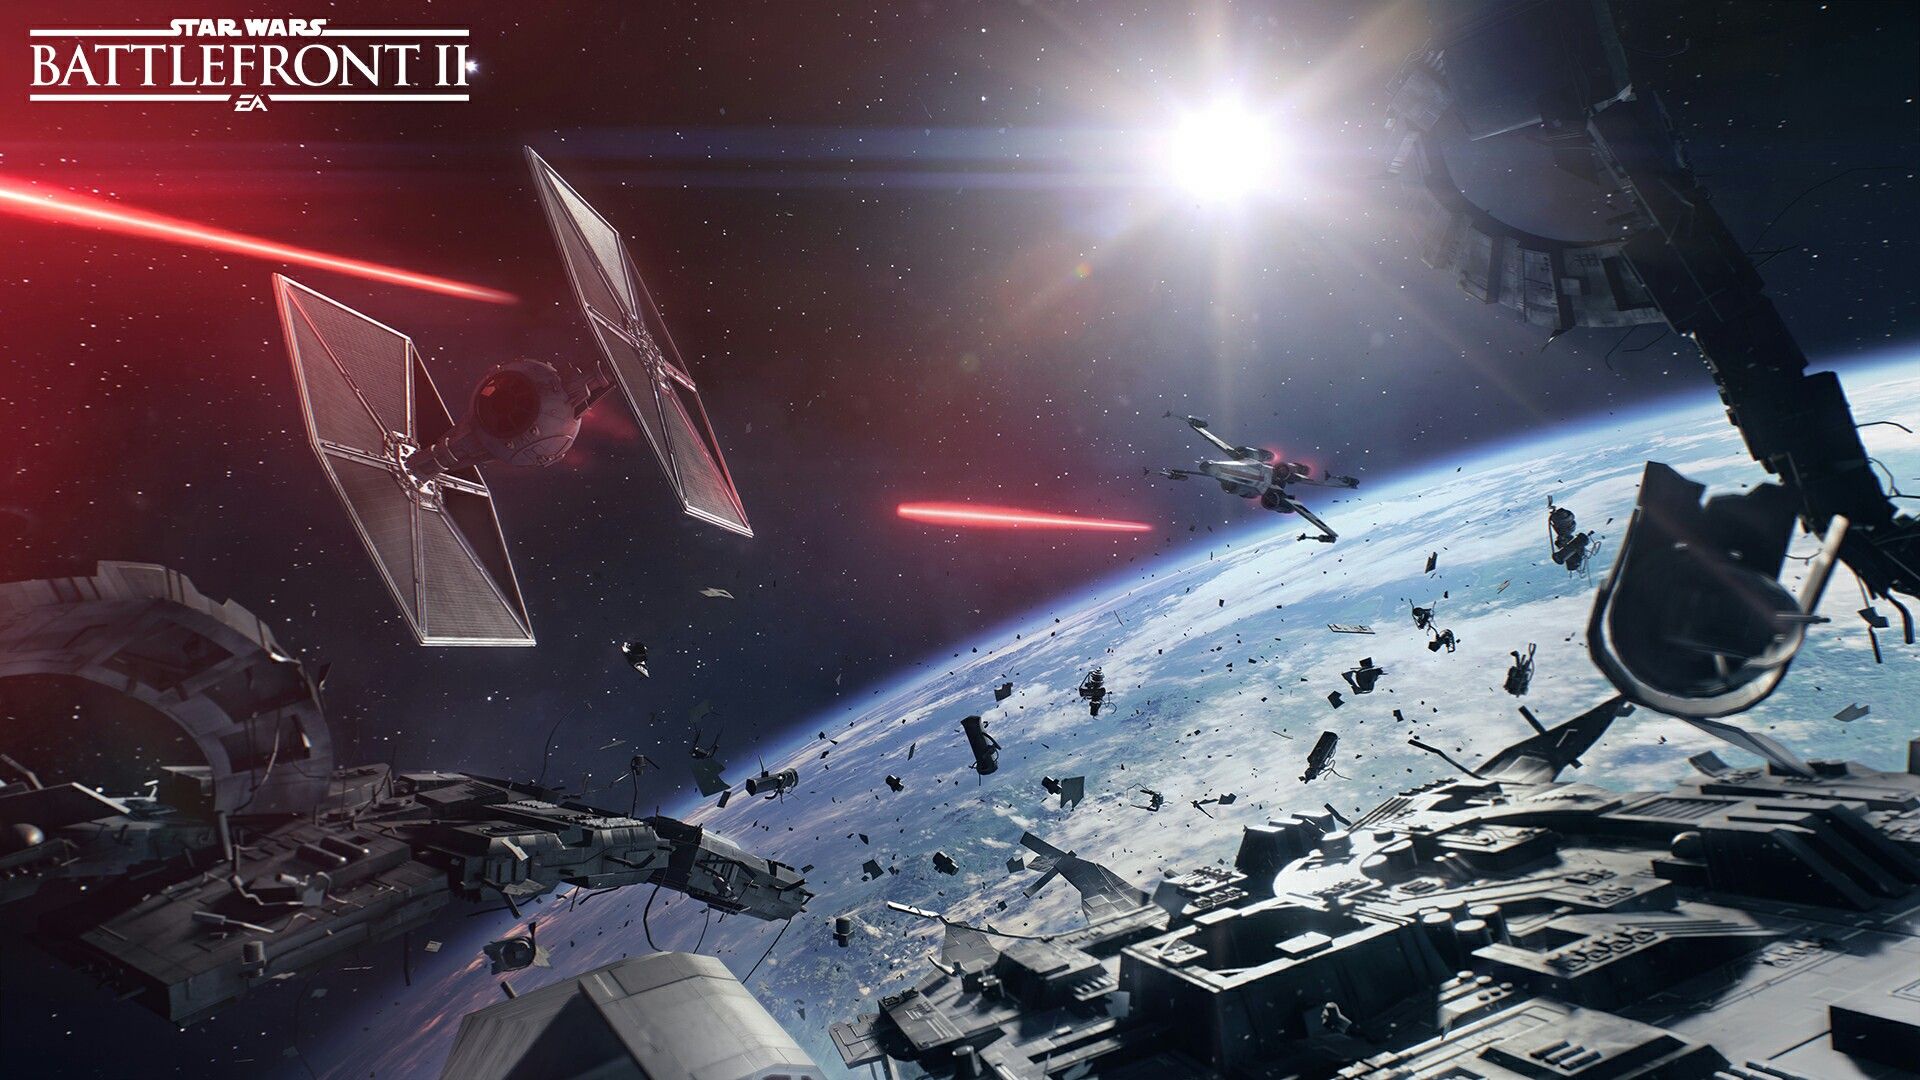 Star Wars Battlefront II Space Battle wreckage. Star wars video games, Star wars pc, Star wars wallpaper